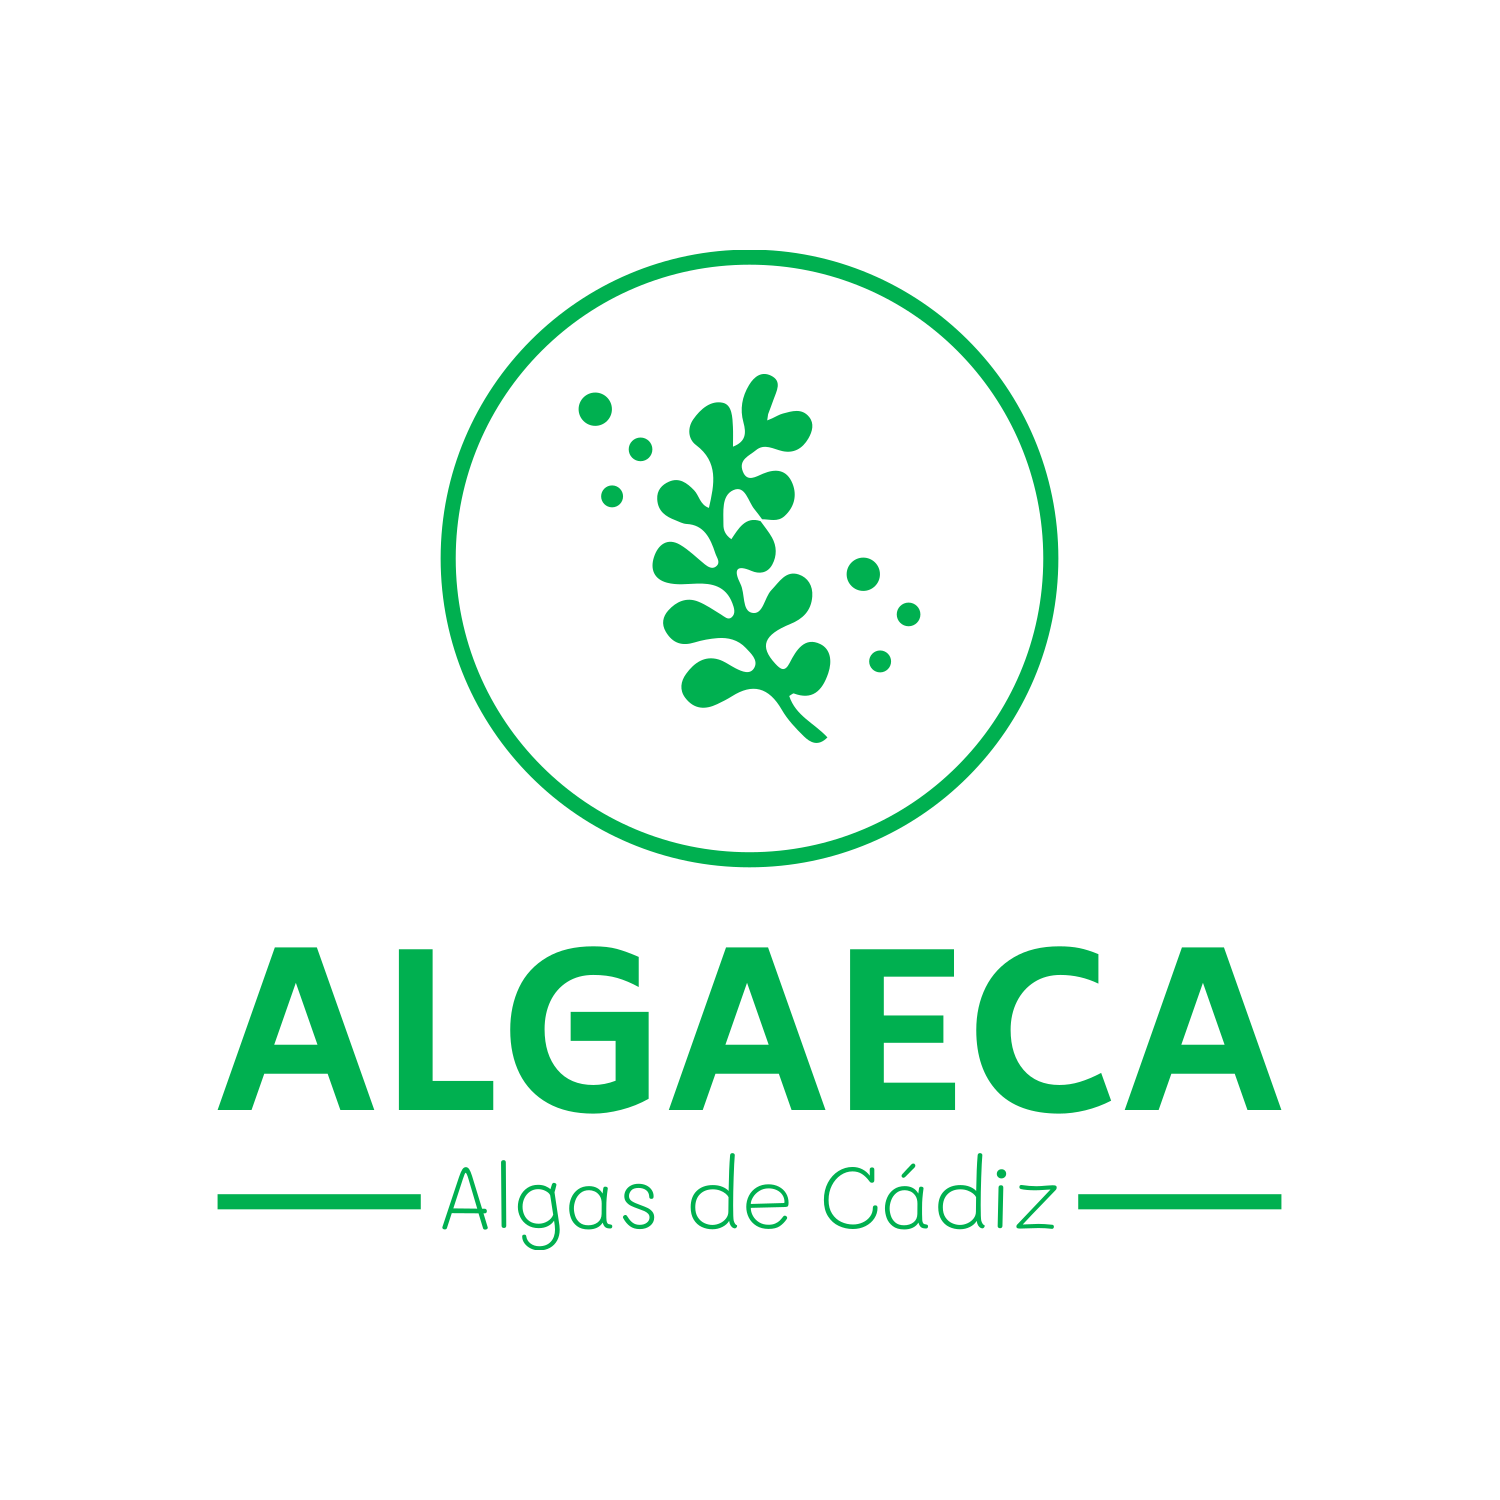 Algaeca"